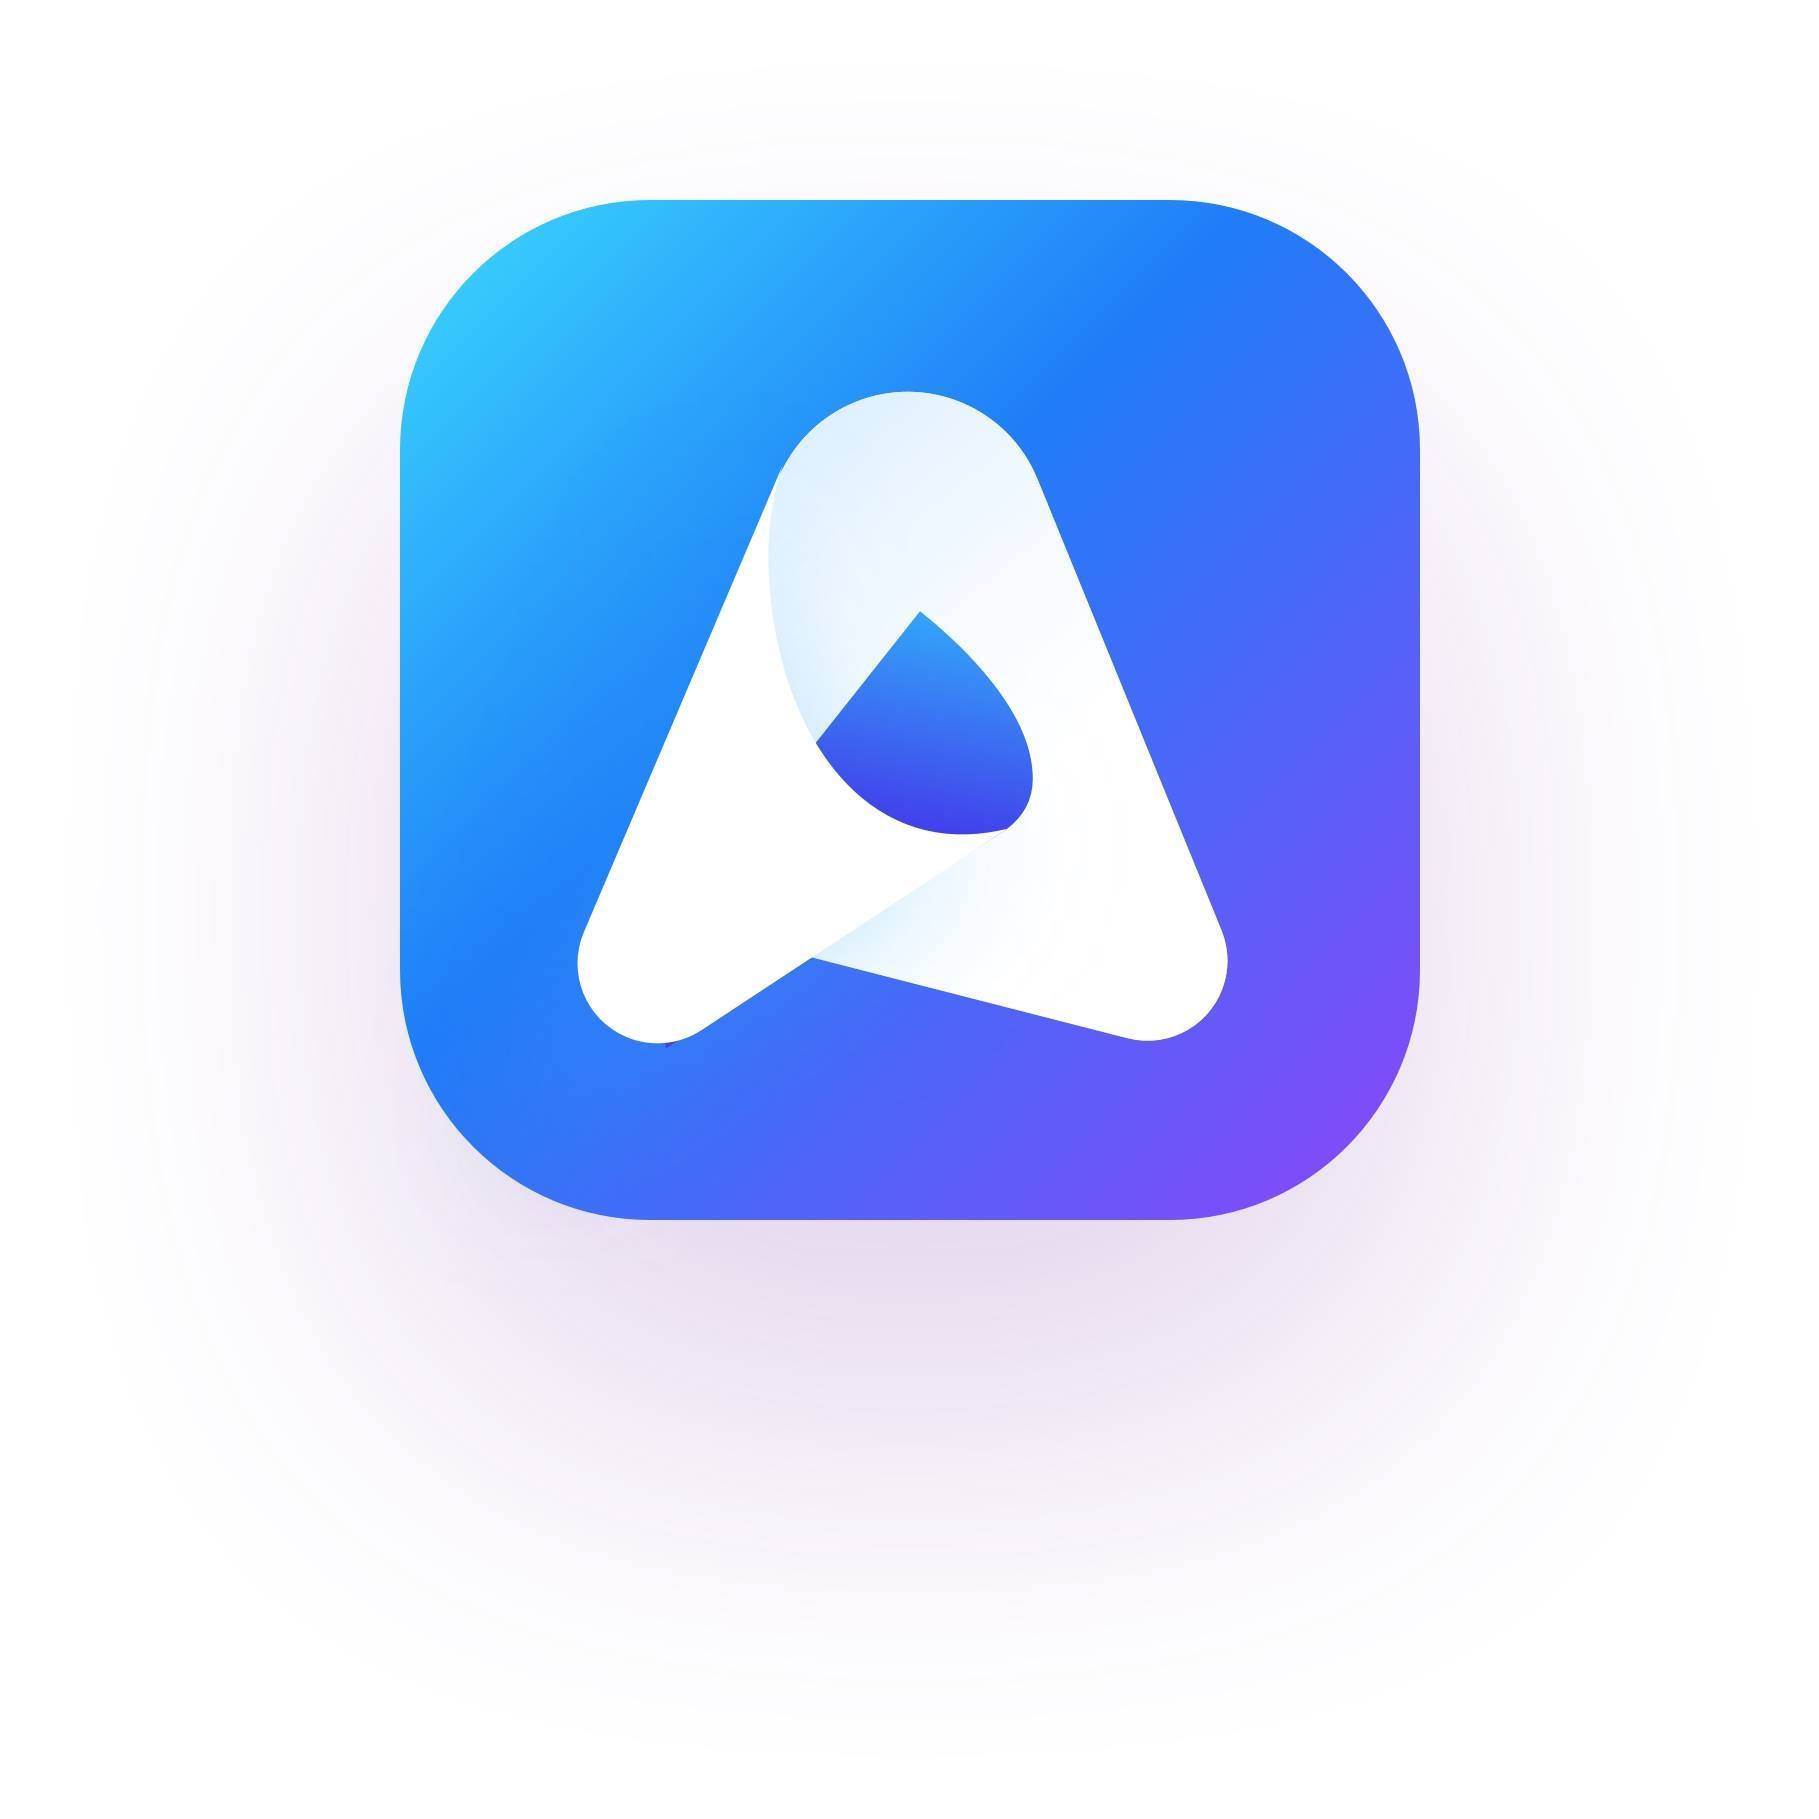 AppLyst logo